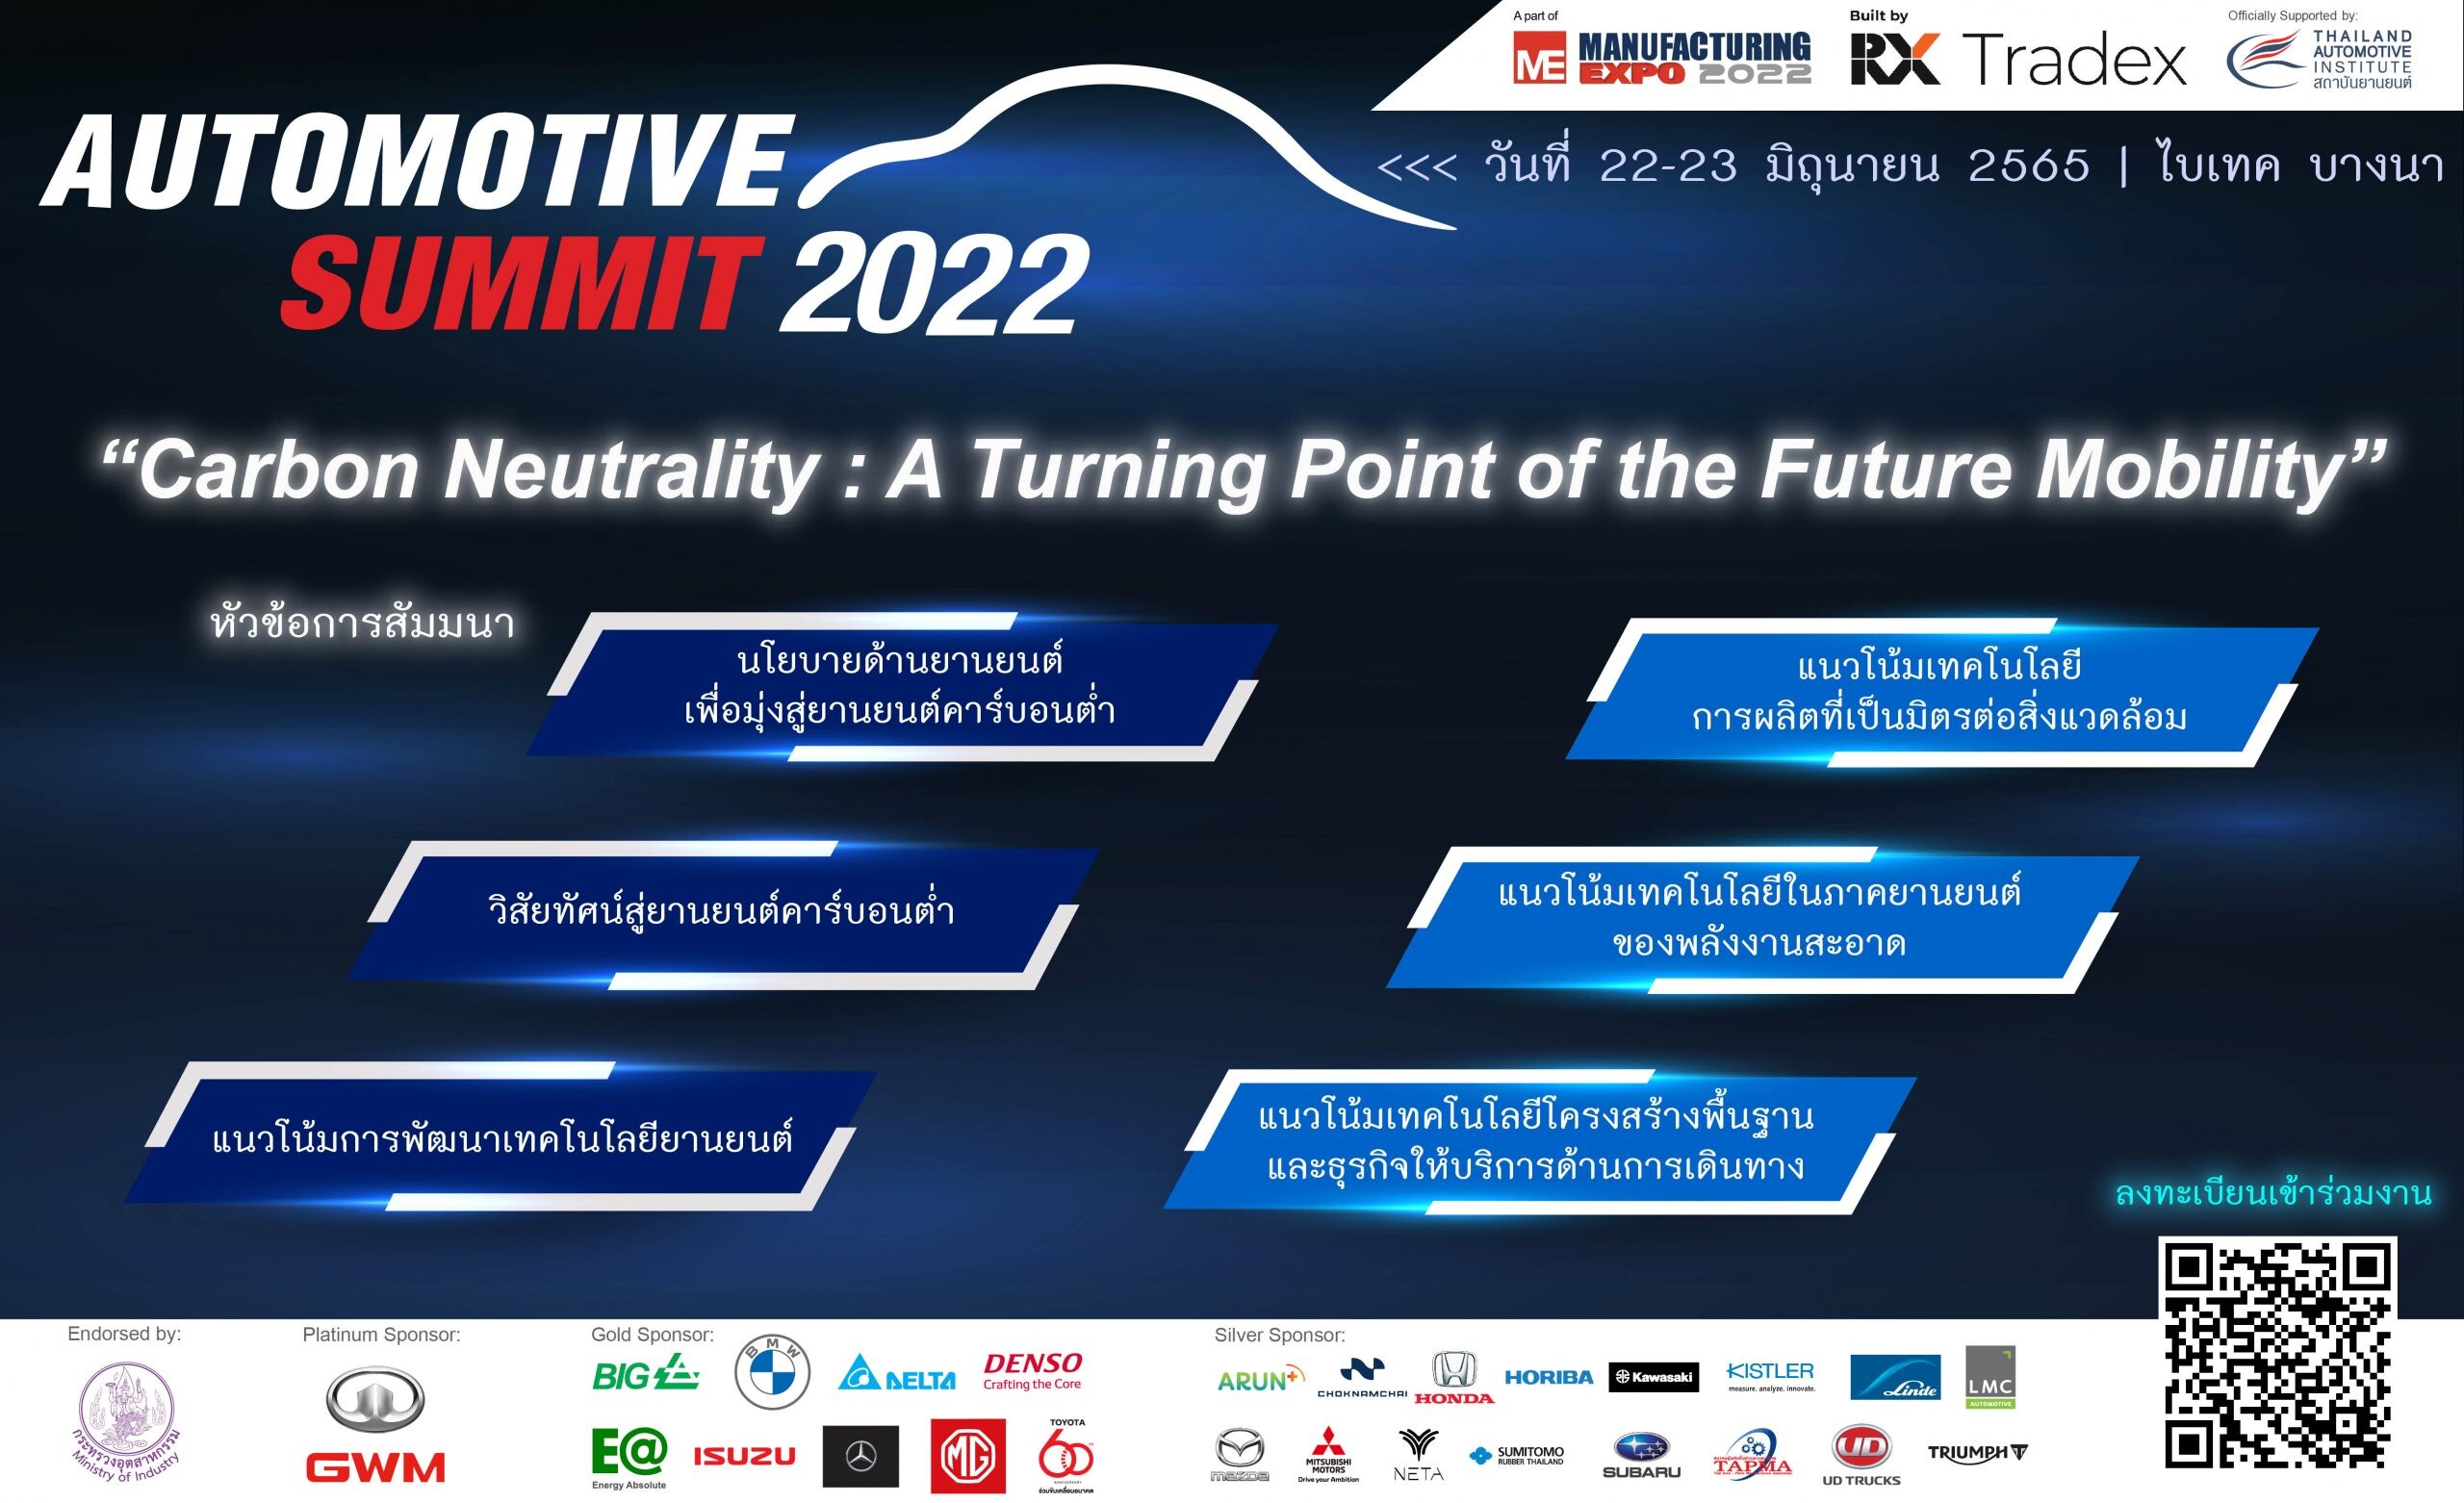 สัมมนาฟรี! "Automotive Summit 2022 ความเป็นกลางทางคาร์บอน จุดเปลี่ยนของยานยนต์แห่งอนาคต" ในวันที่ 22 - 23 มิ.ย. 2565